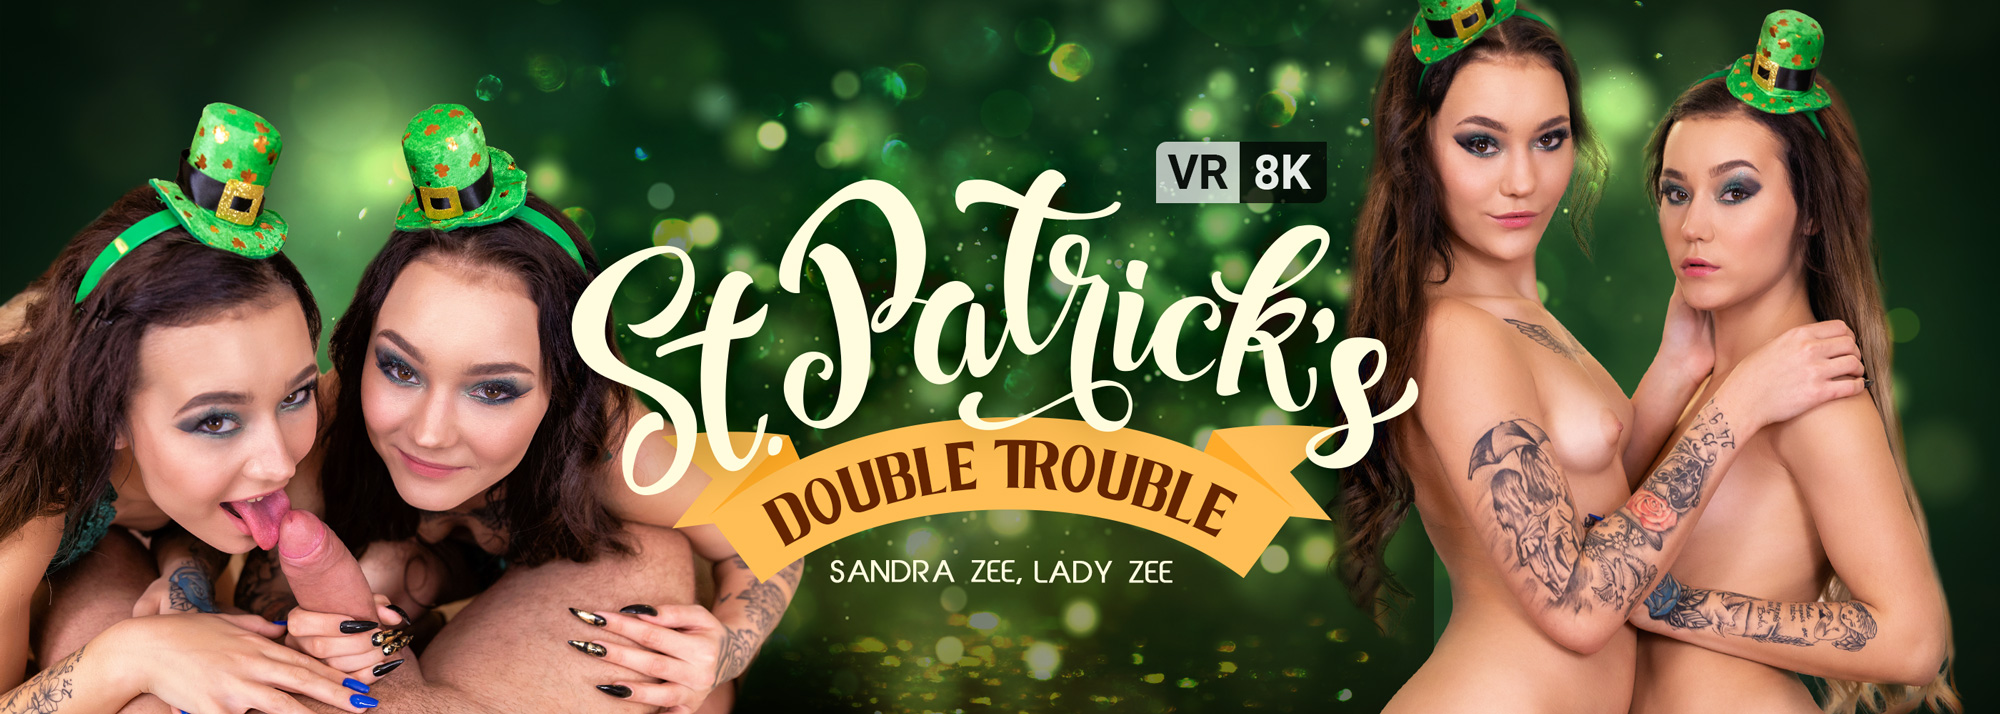 St. Patrick's Double Trouble - VR Porn Video, Starring: Lady Zee, Sandra Zee